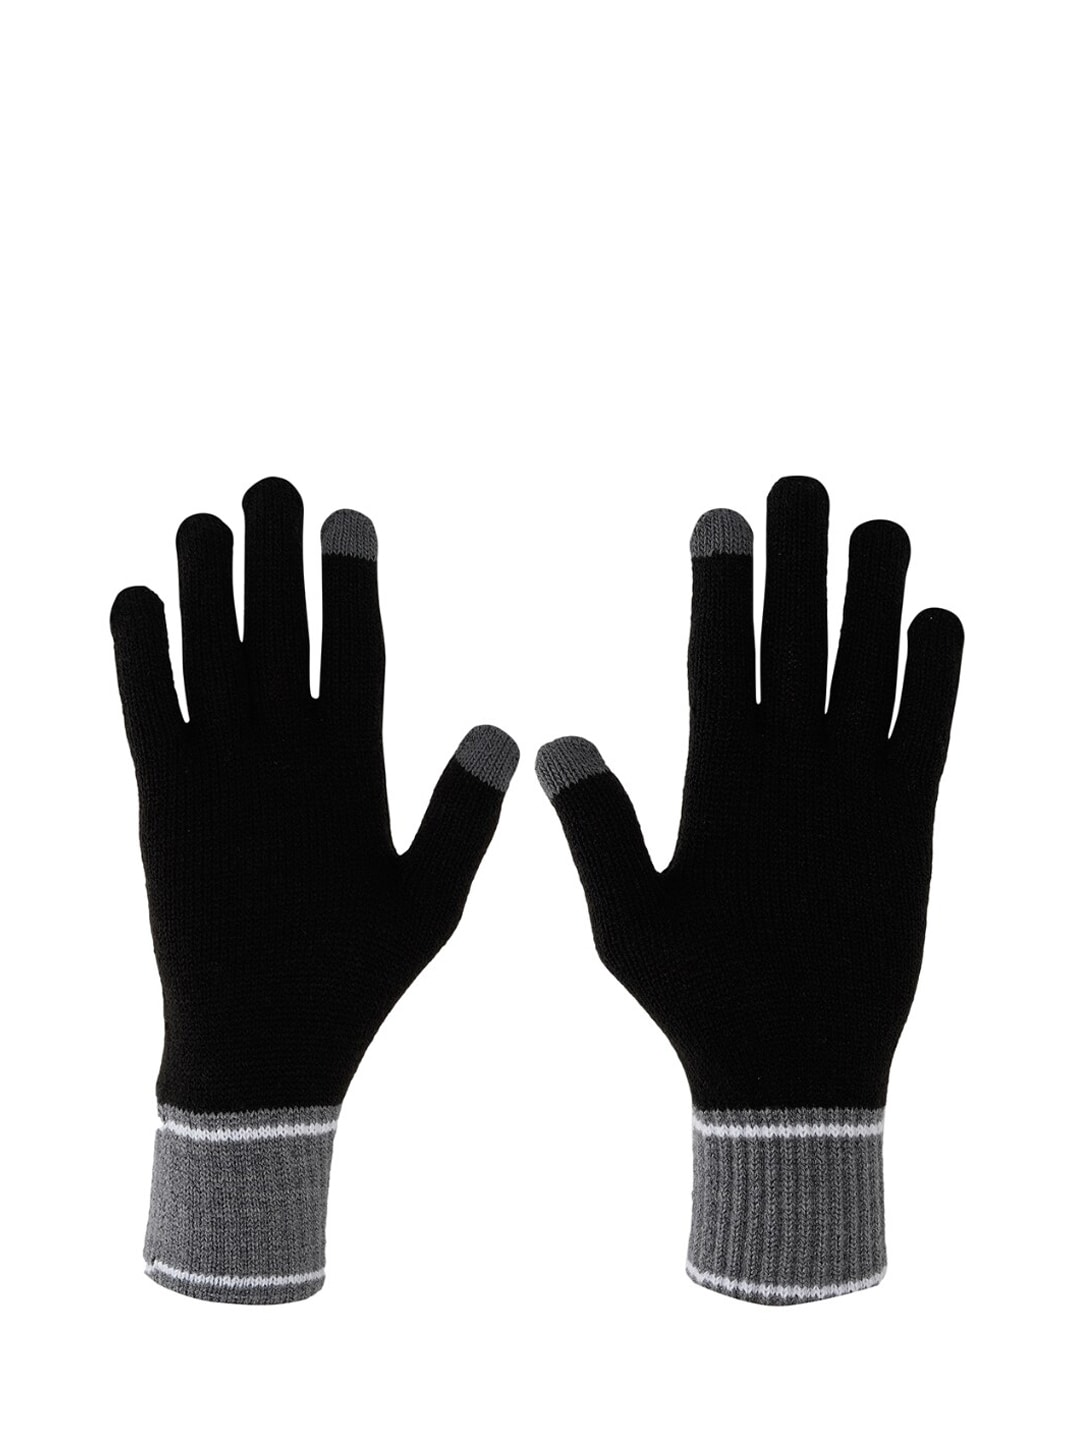 Puma Unisex Black Solid Gloves Price in India